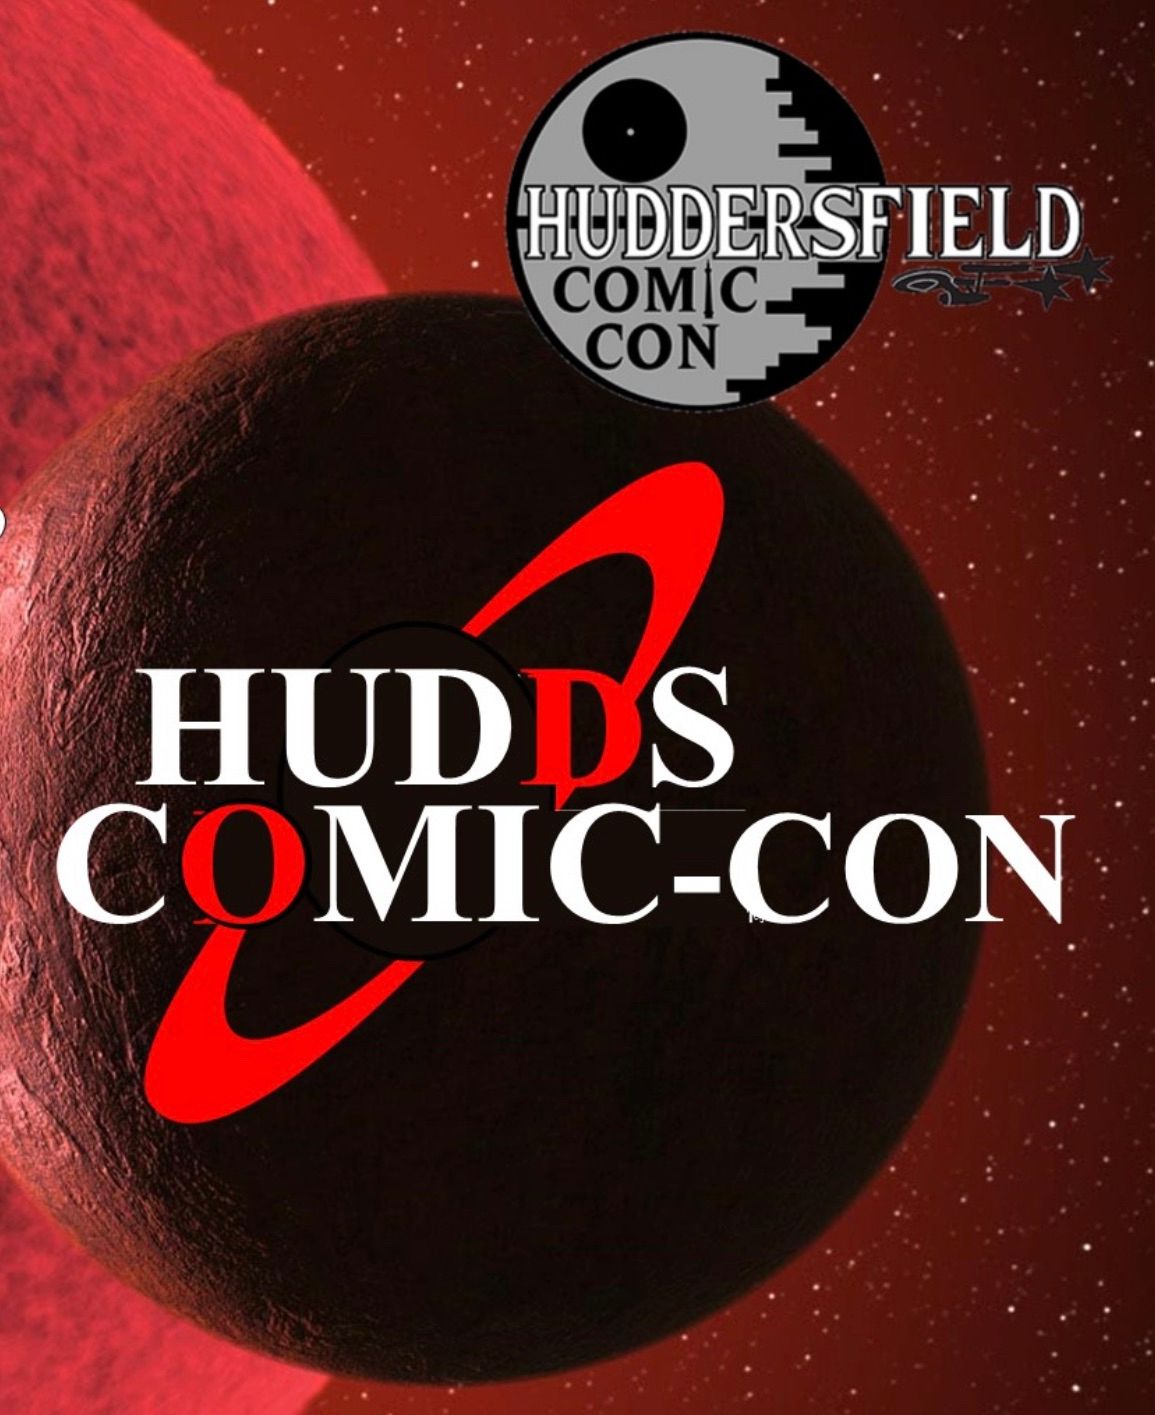 Huddersfield Comic-Con 